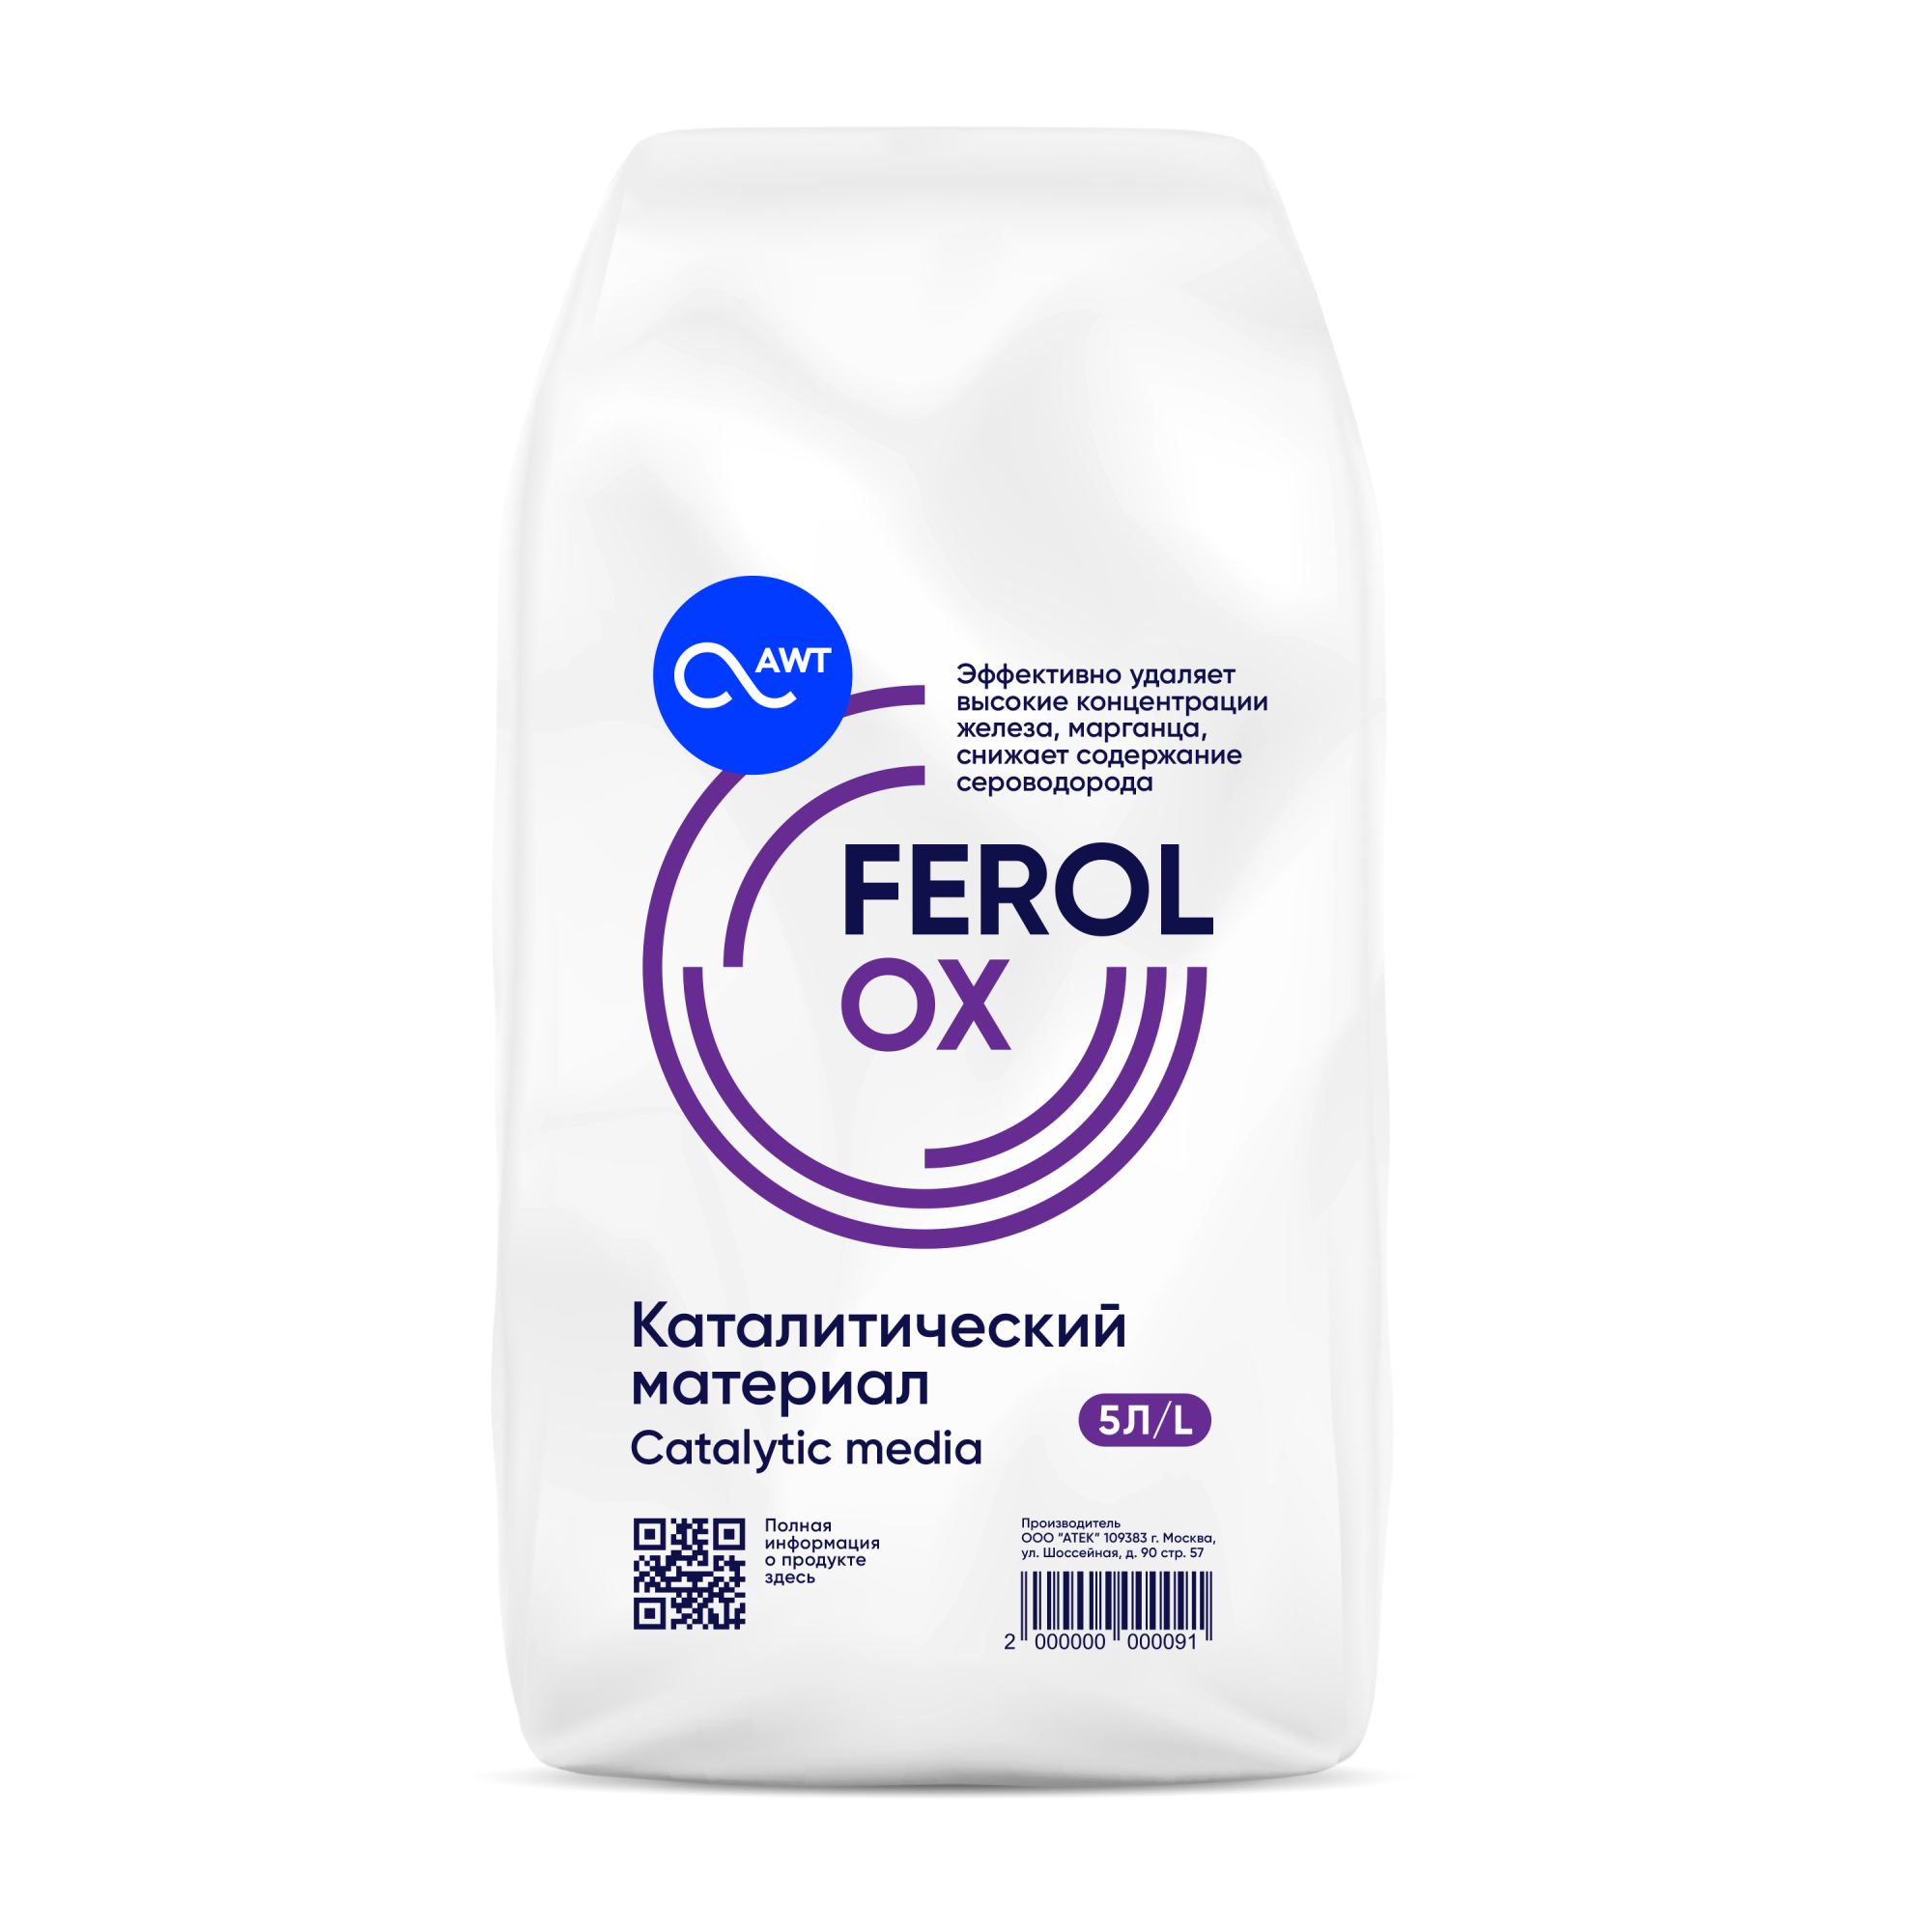 Фильтрующий материал Ferolox, каталитический материал, загрузка (1 мешок - 5 л., 8 кг.)